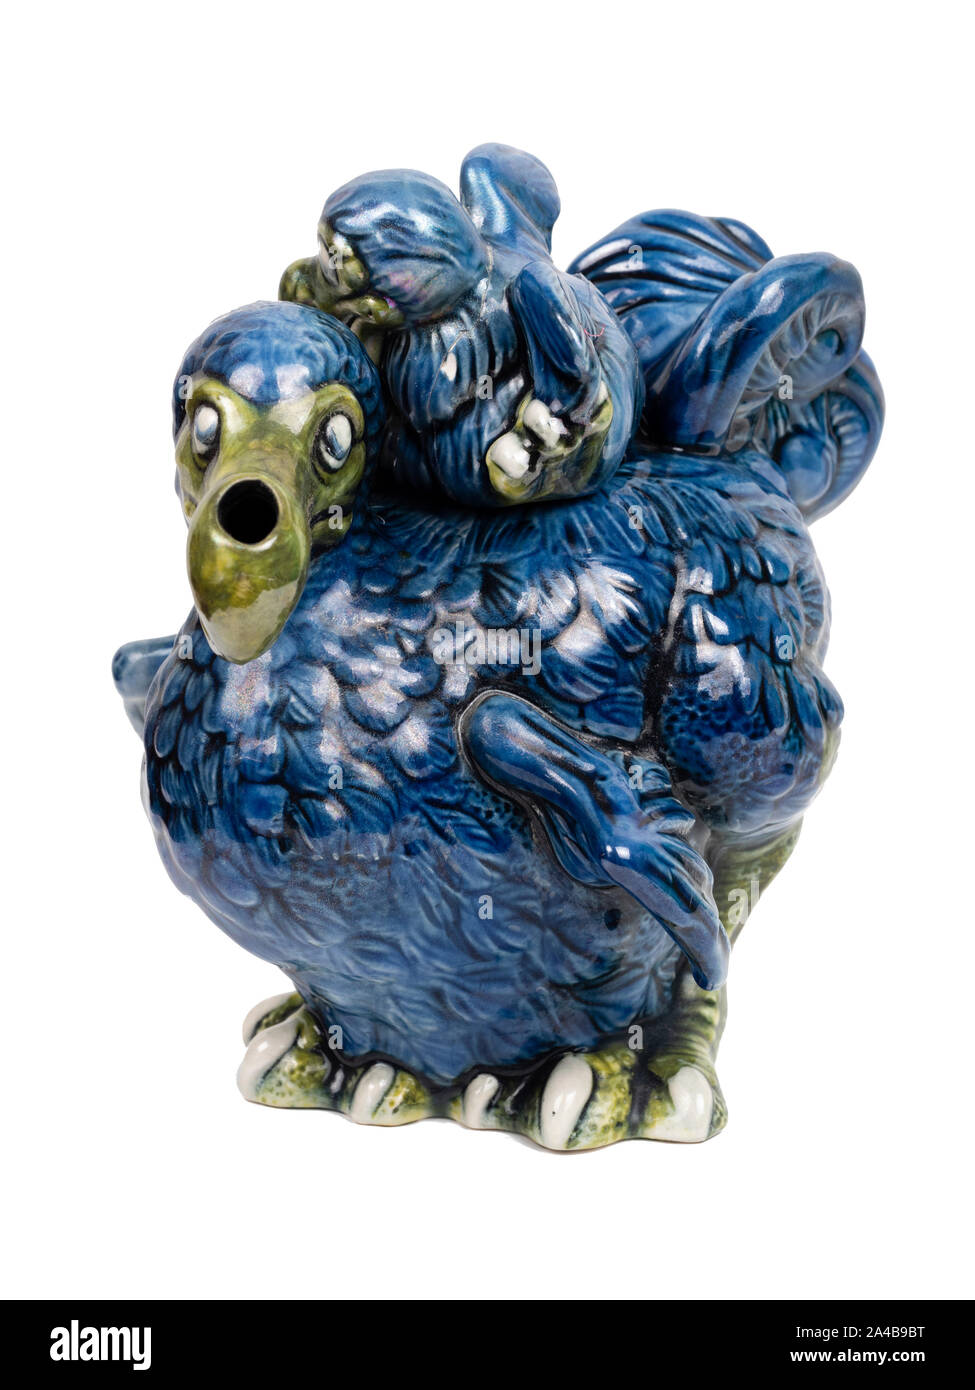 Cardew cerámica azul de especies en peligro de extinción y el pollo dodo tetera ornamental sobre un fondo blanco. Foto de stock